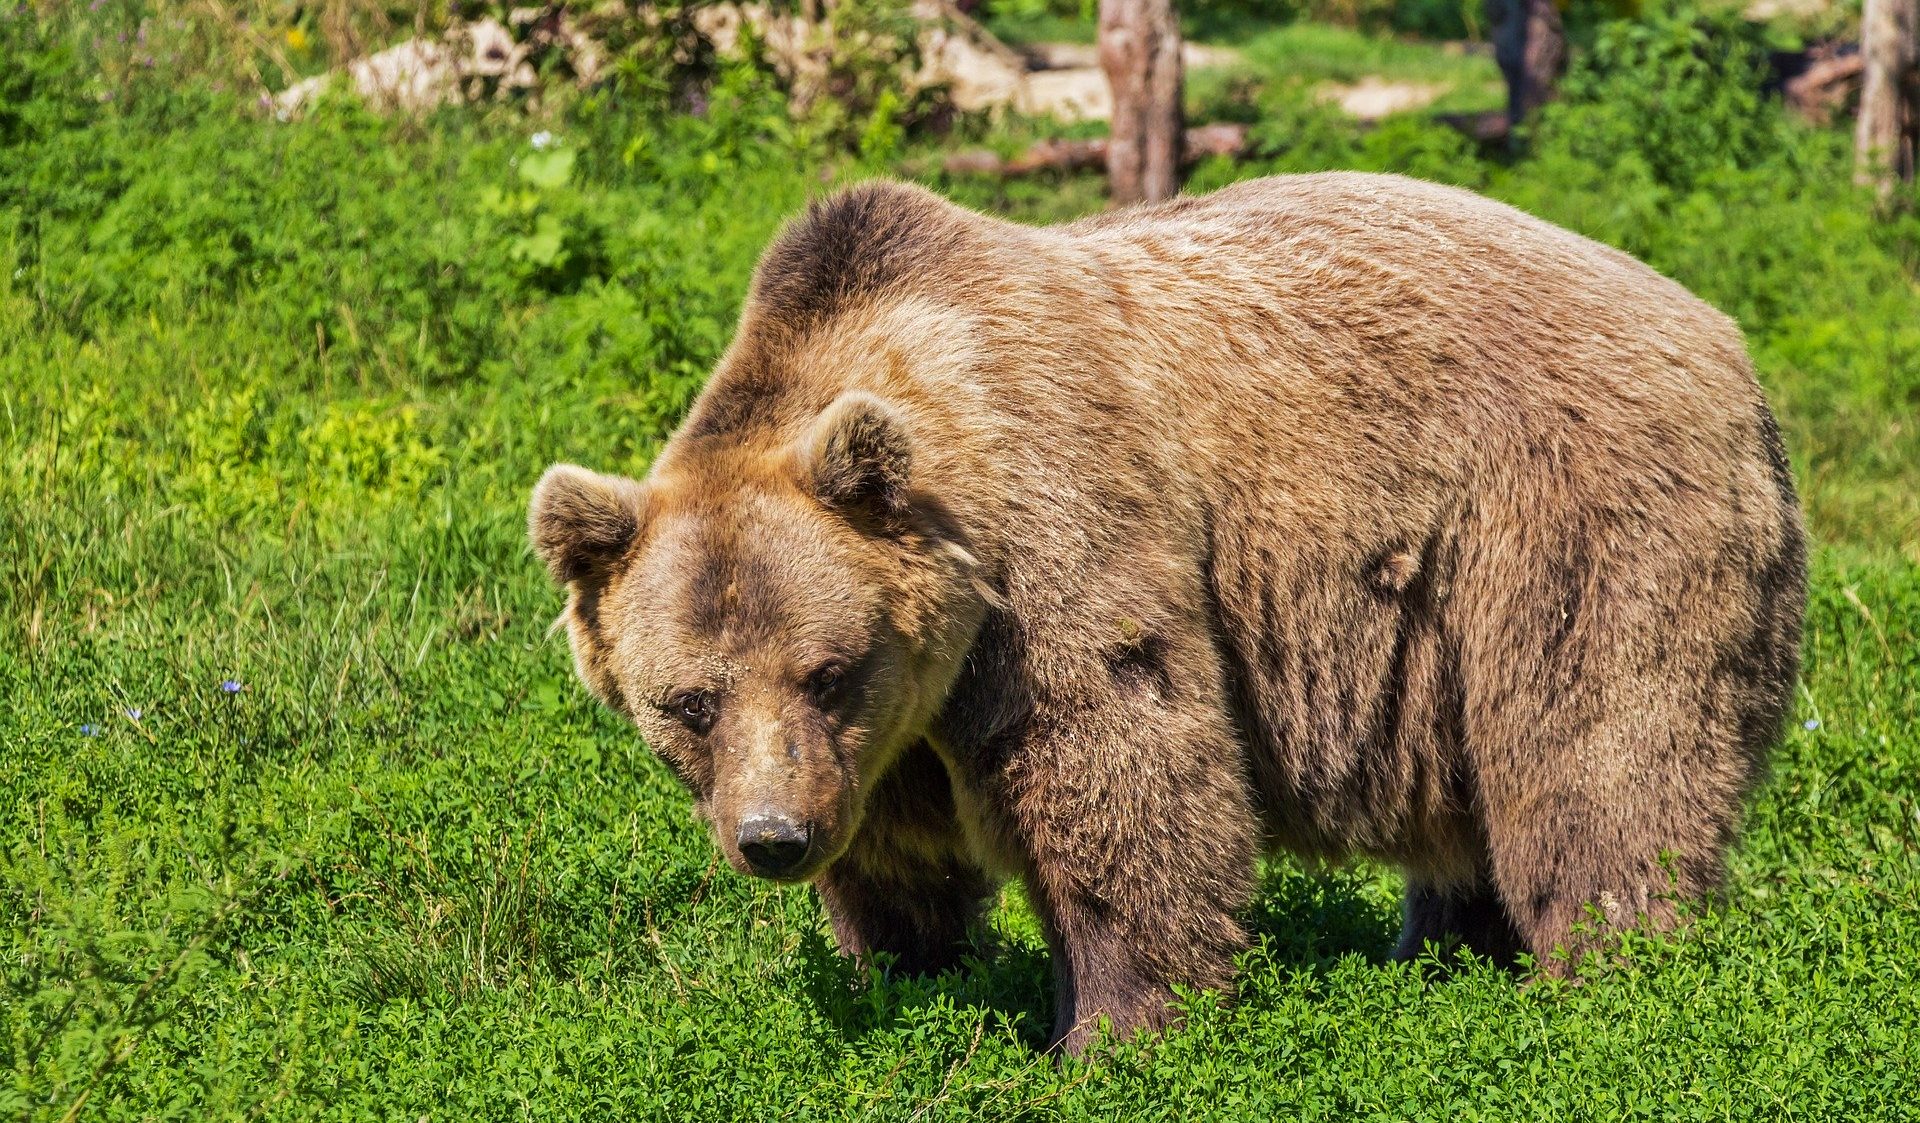 «Автор бессмертный»: в Кузбассе обсуждают человека, который подошёл к медведям